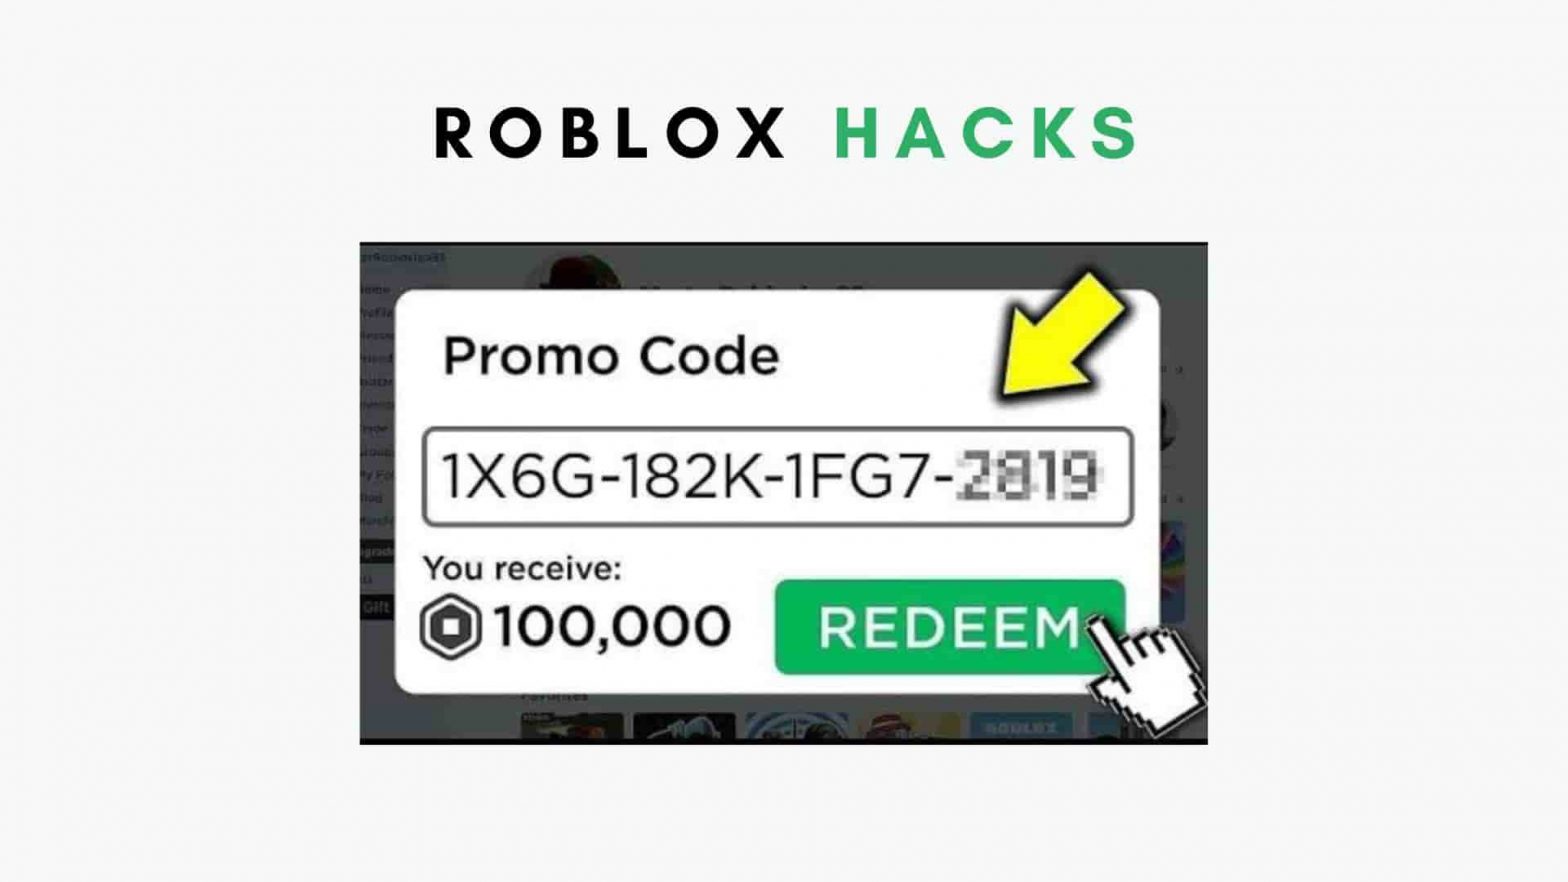 Roblox hacks